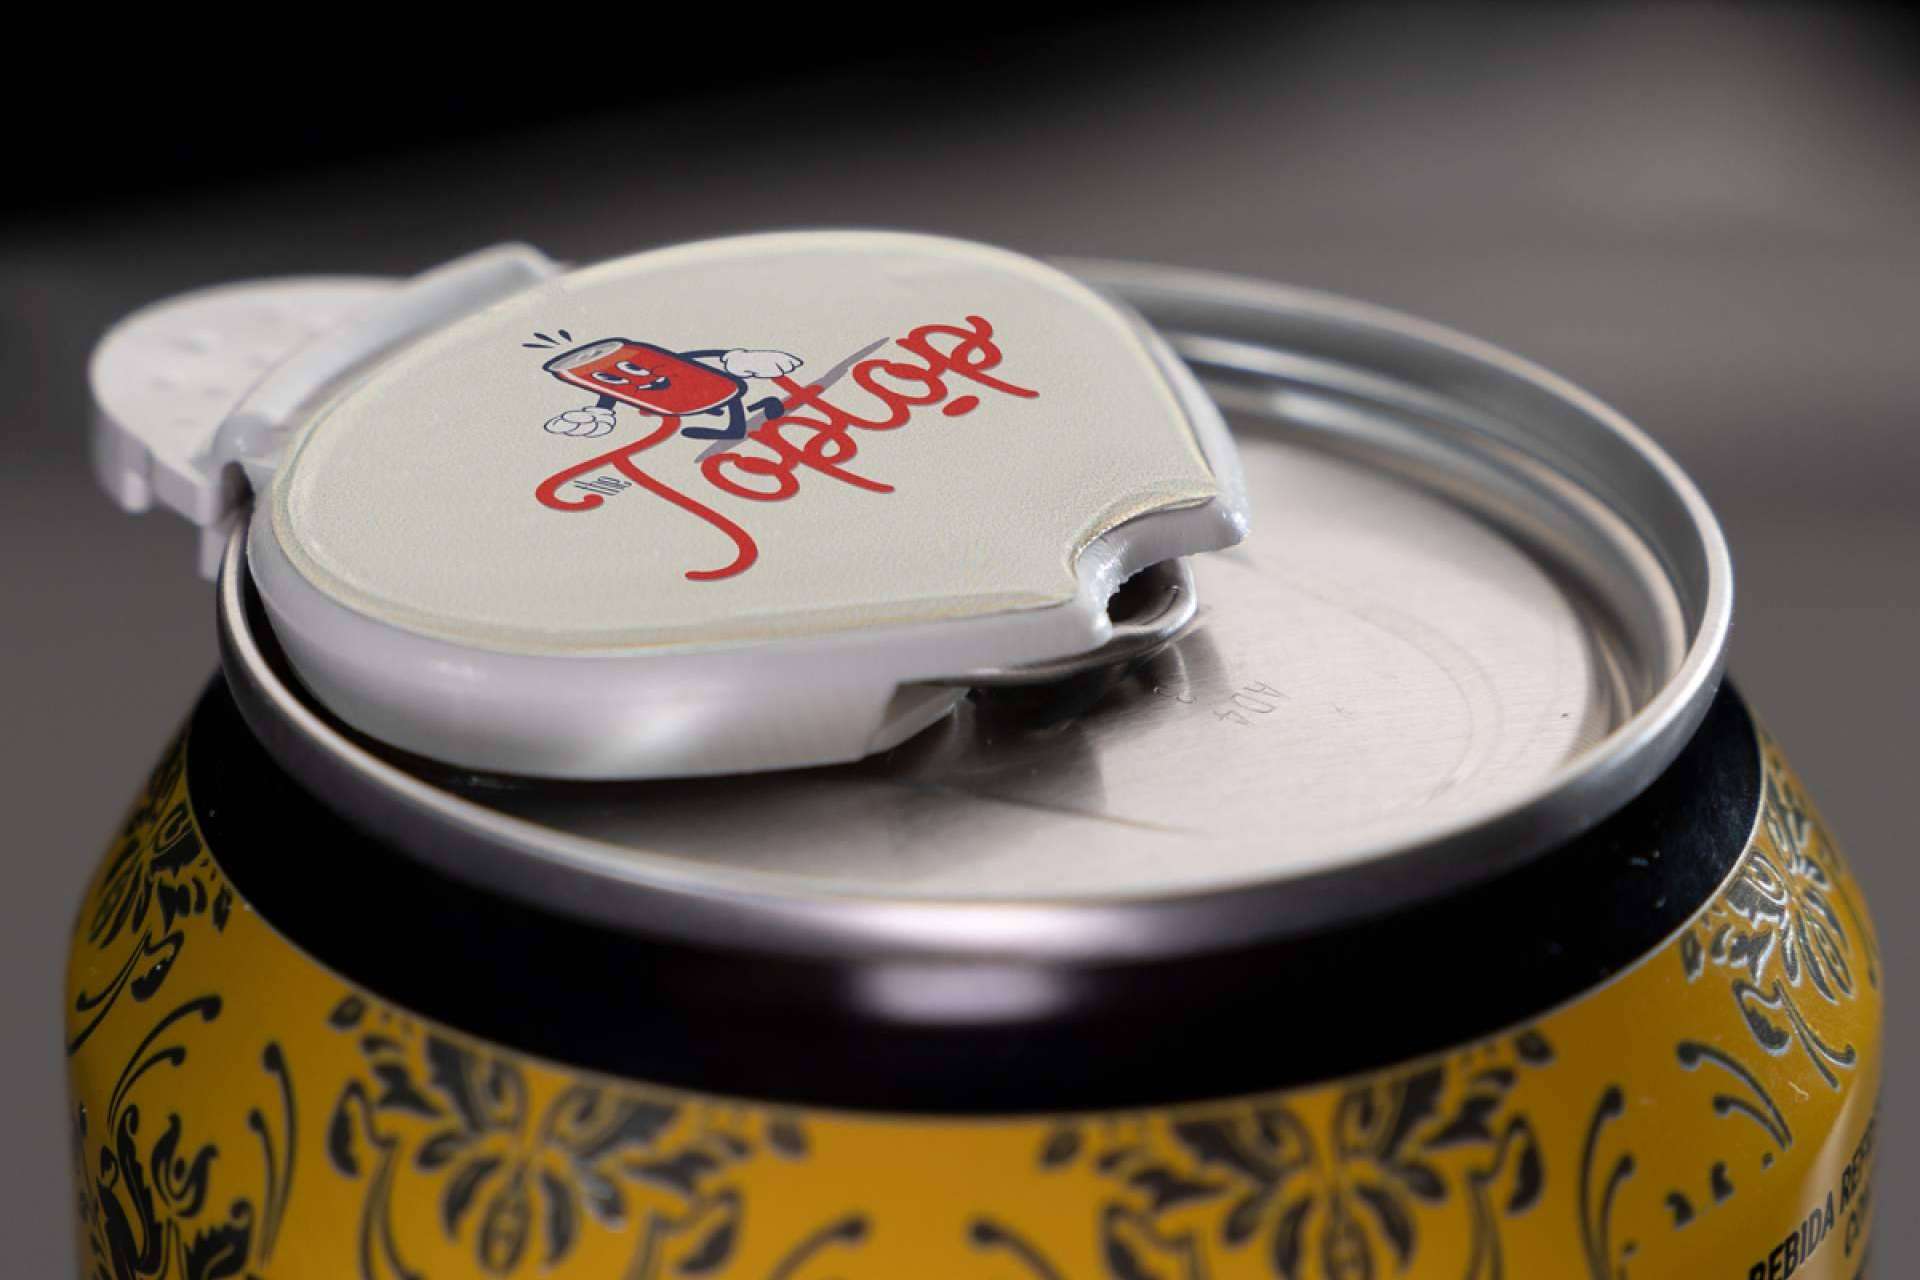 THE TOPTOP, la tapa para latas que hará que tus bebidas no pierdan su chispa